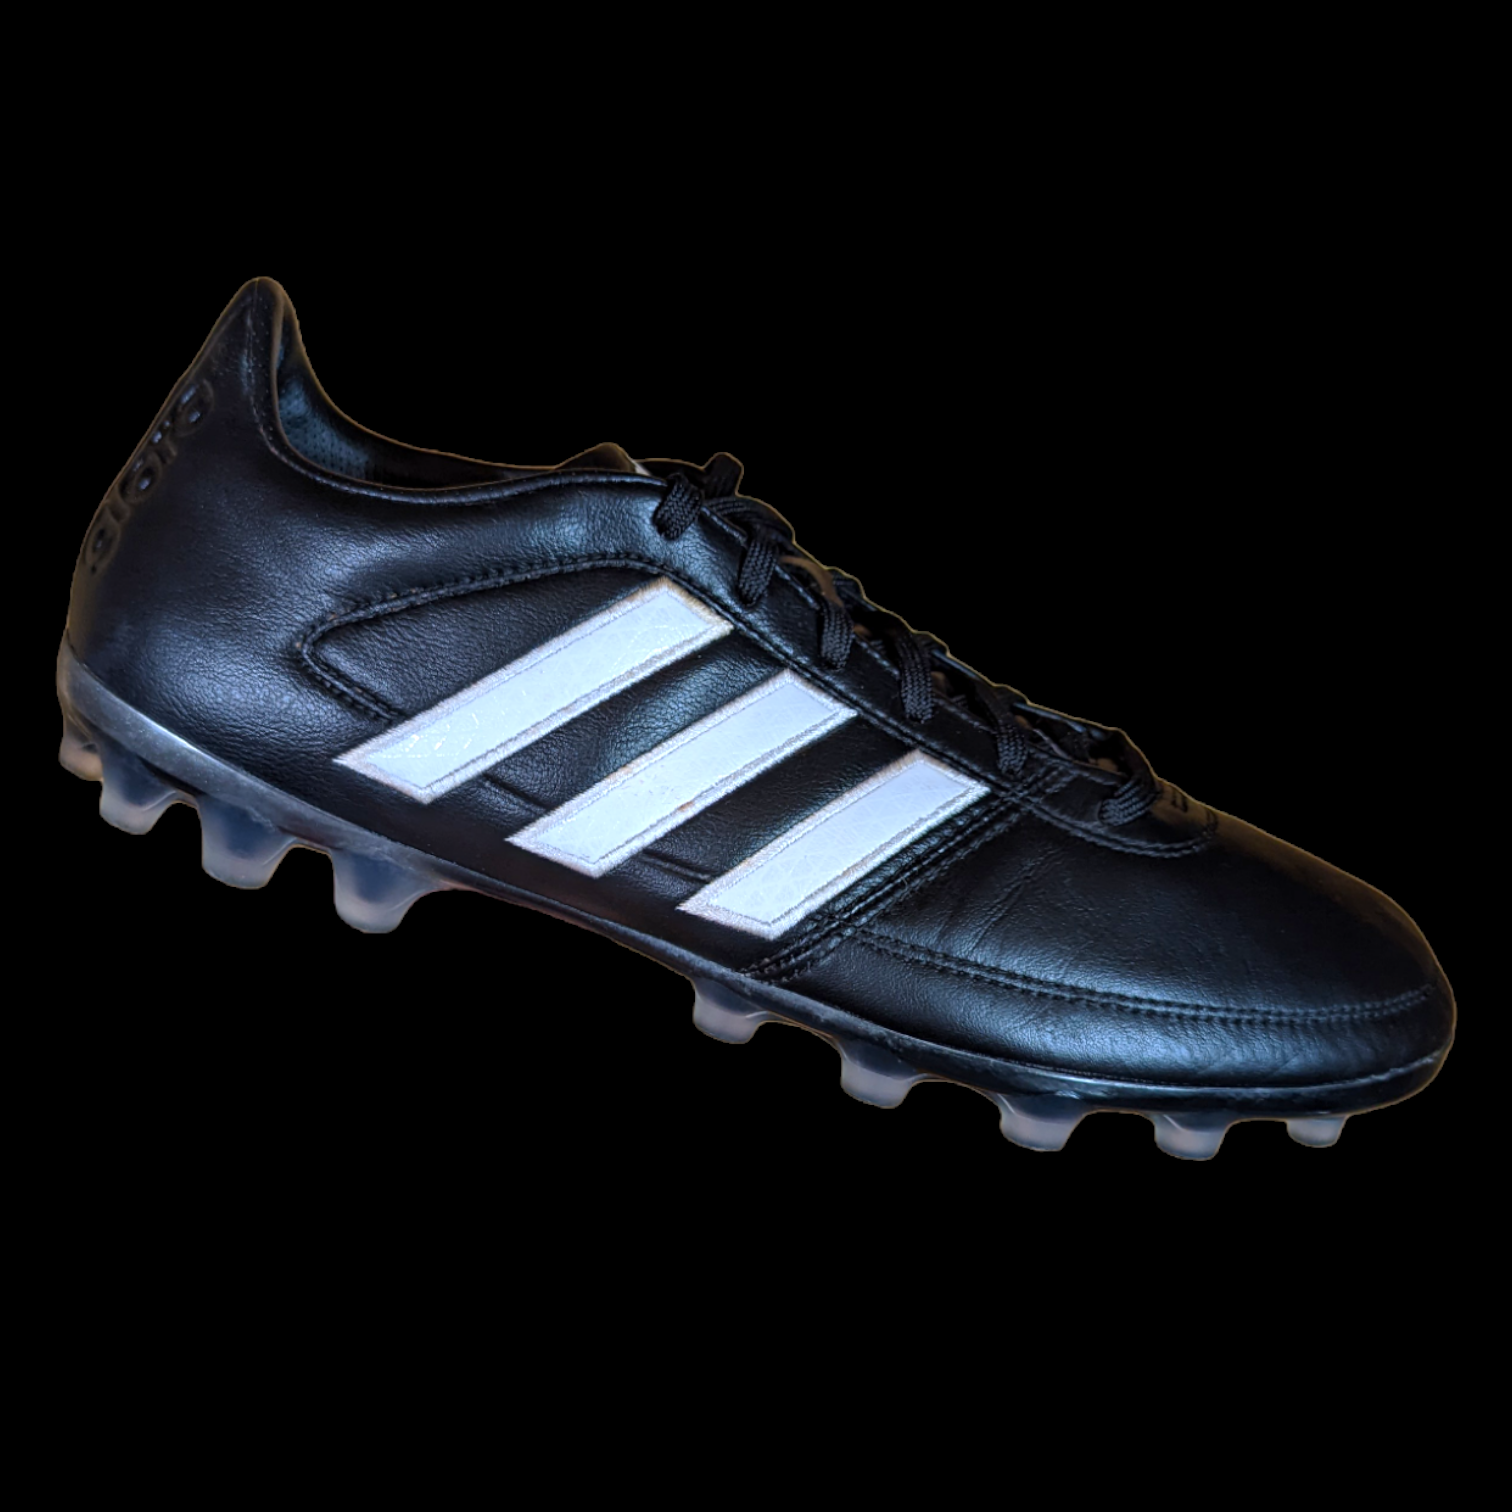 Adidas Gloro 16.1 - Black/White/Matte – Boots a Ton